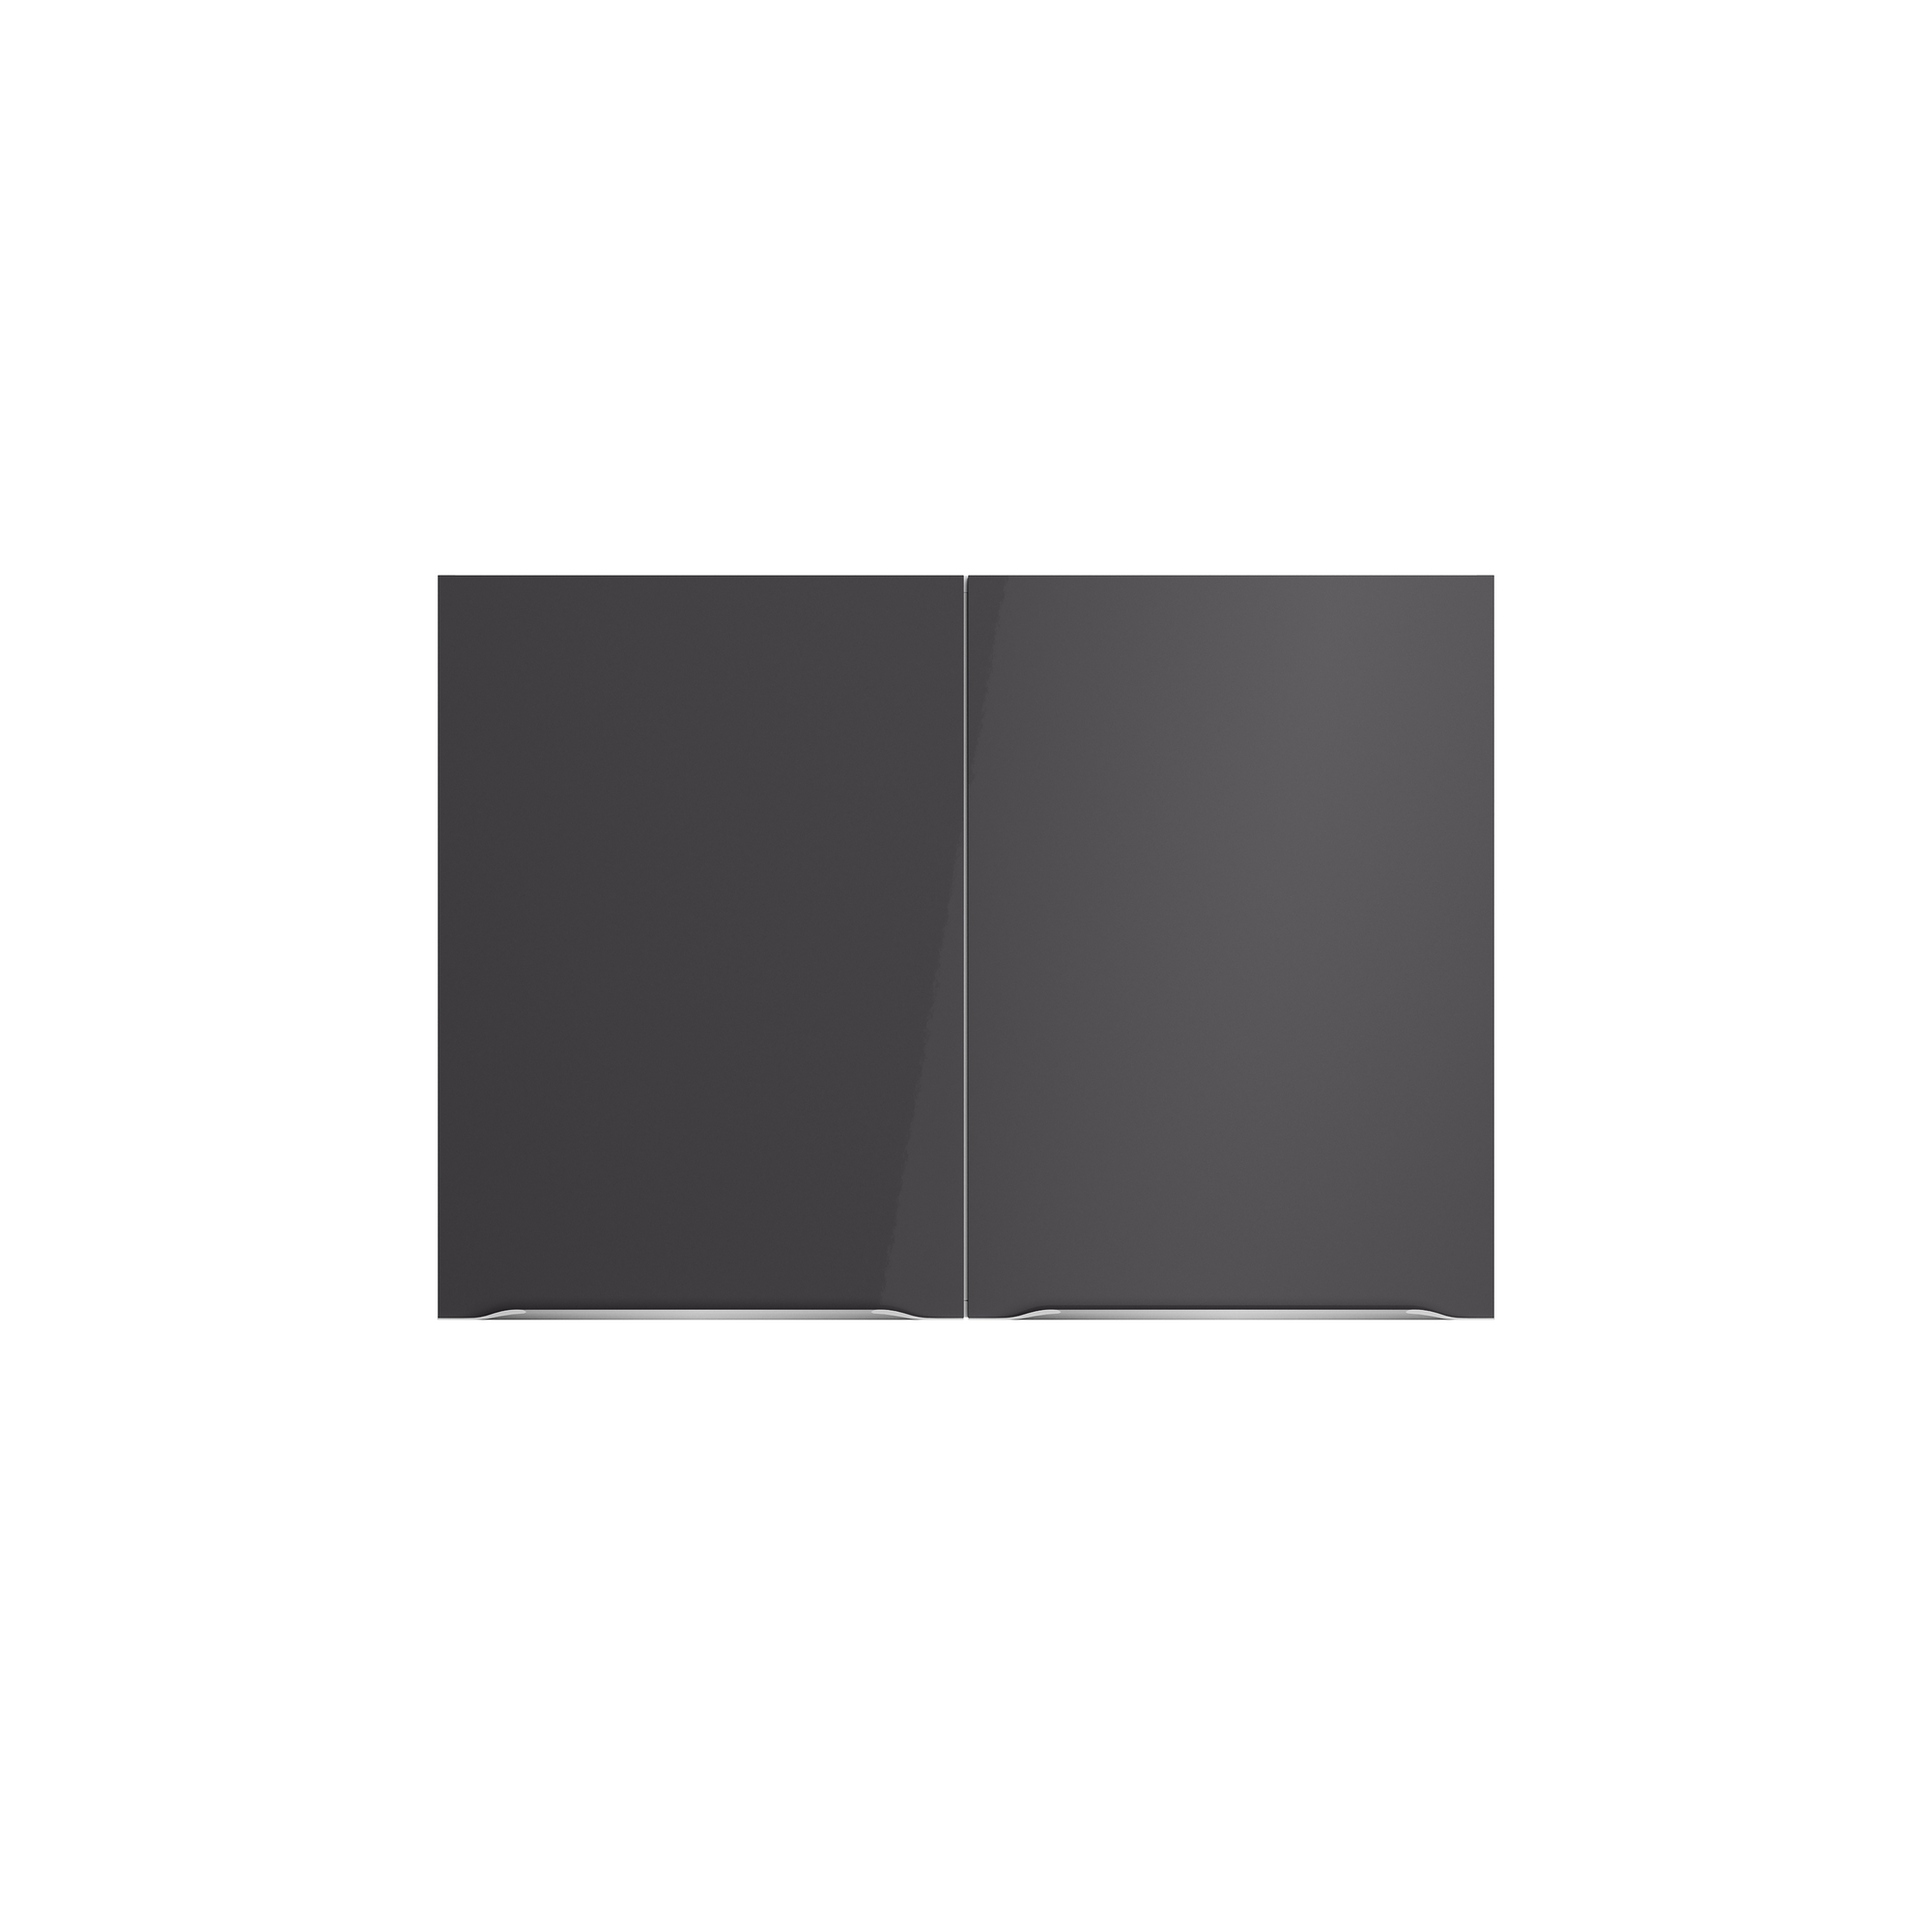 Oberschrank 'Optikomfort Linus984' anthrazit/eichefarben 100 x 70,4 x 34,9 cm + product picture